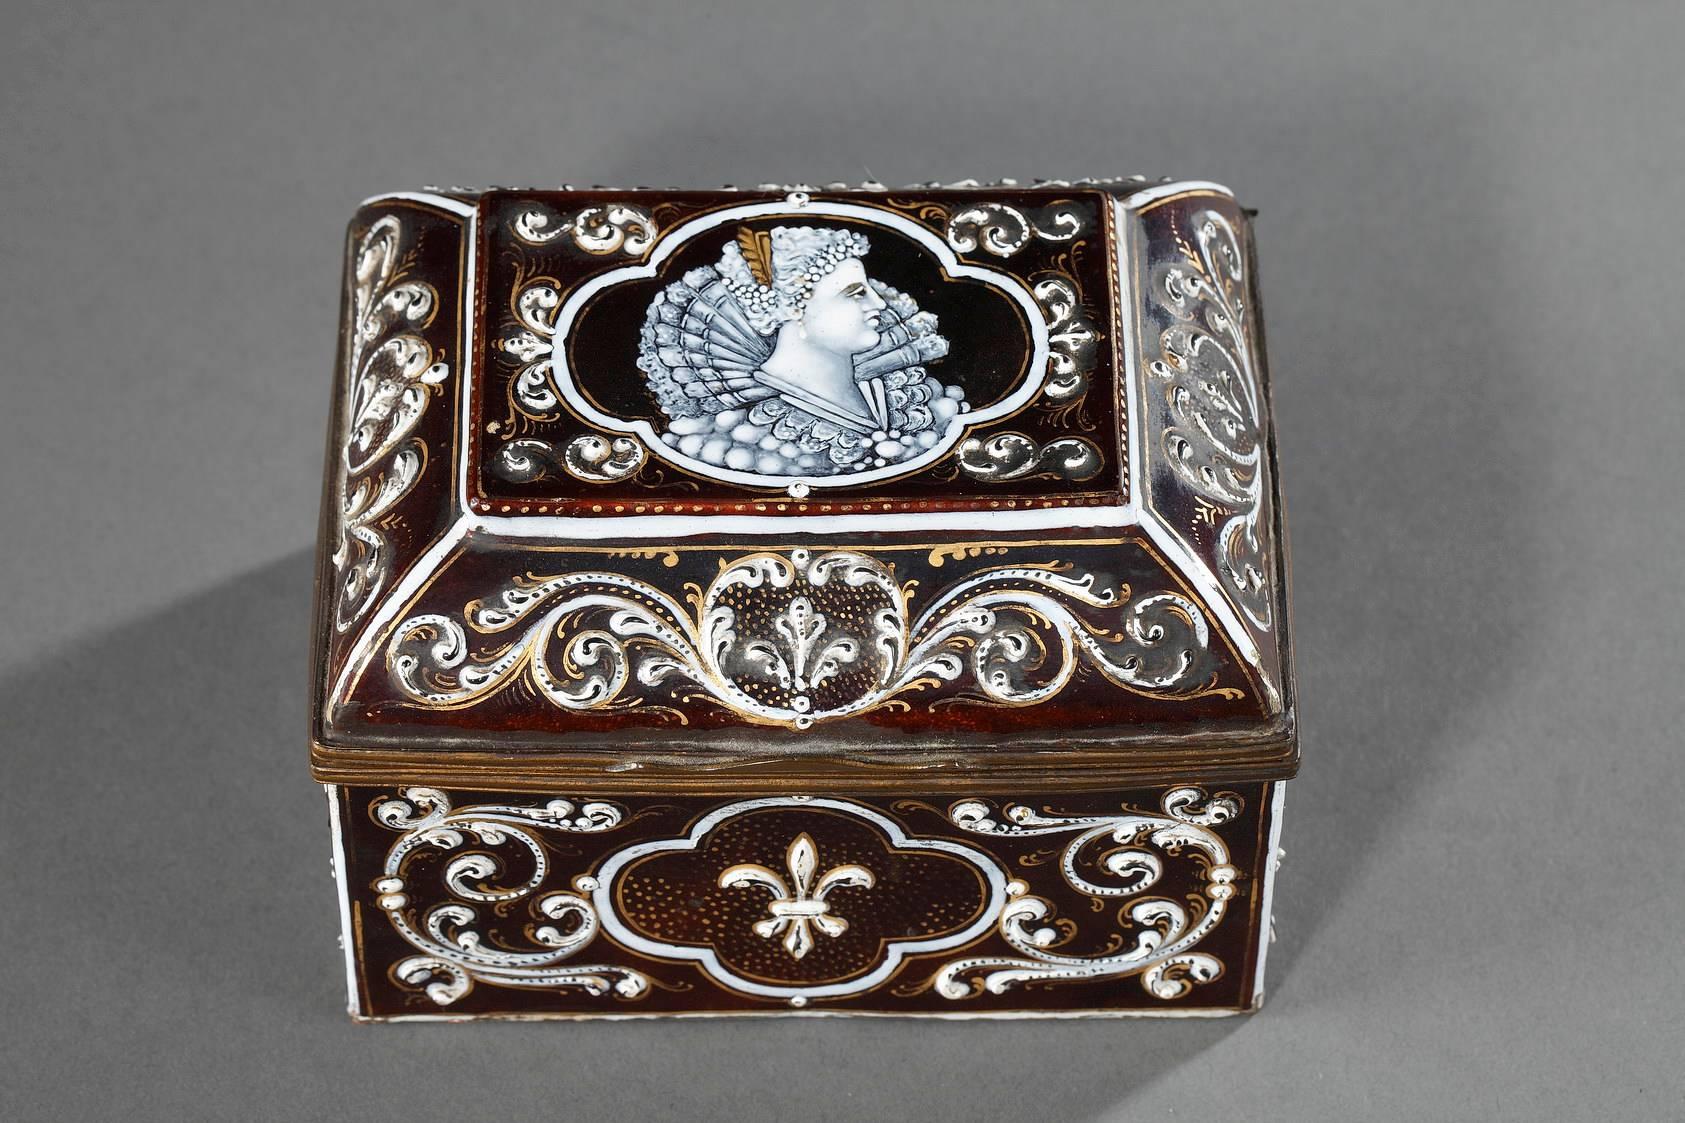 Petite boîte à souvenirs rectangulaire en émail de Limoges. Le couvercle est décoré d'un médaillon central représentant le profil d'une femme de la haute société, qui était certainement la propriétaire de cette boîte de la fin du XIXe siècle. Des